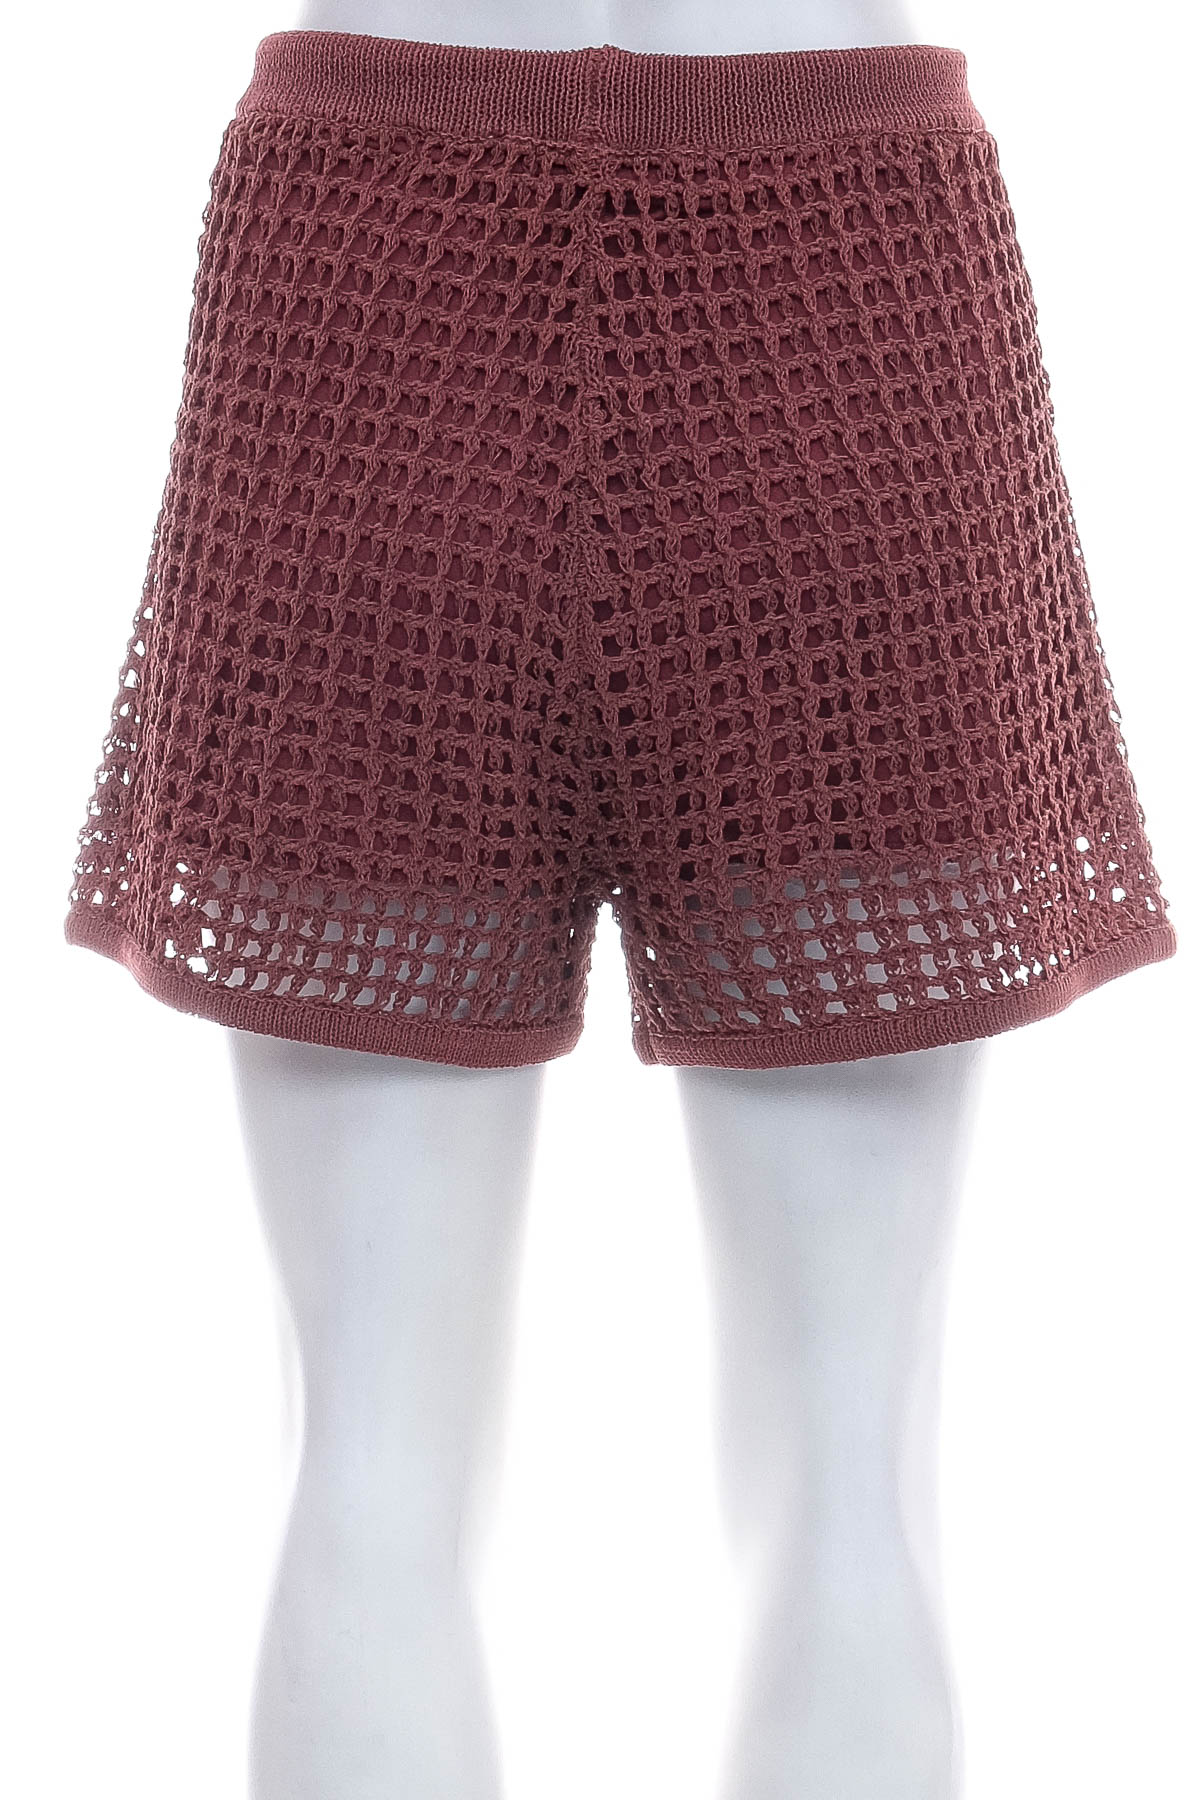 Female shorts - ZARA - 1